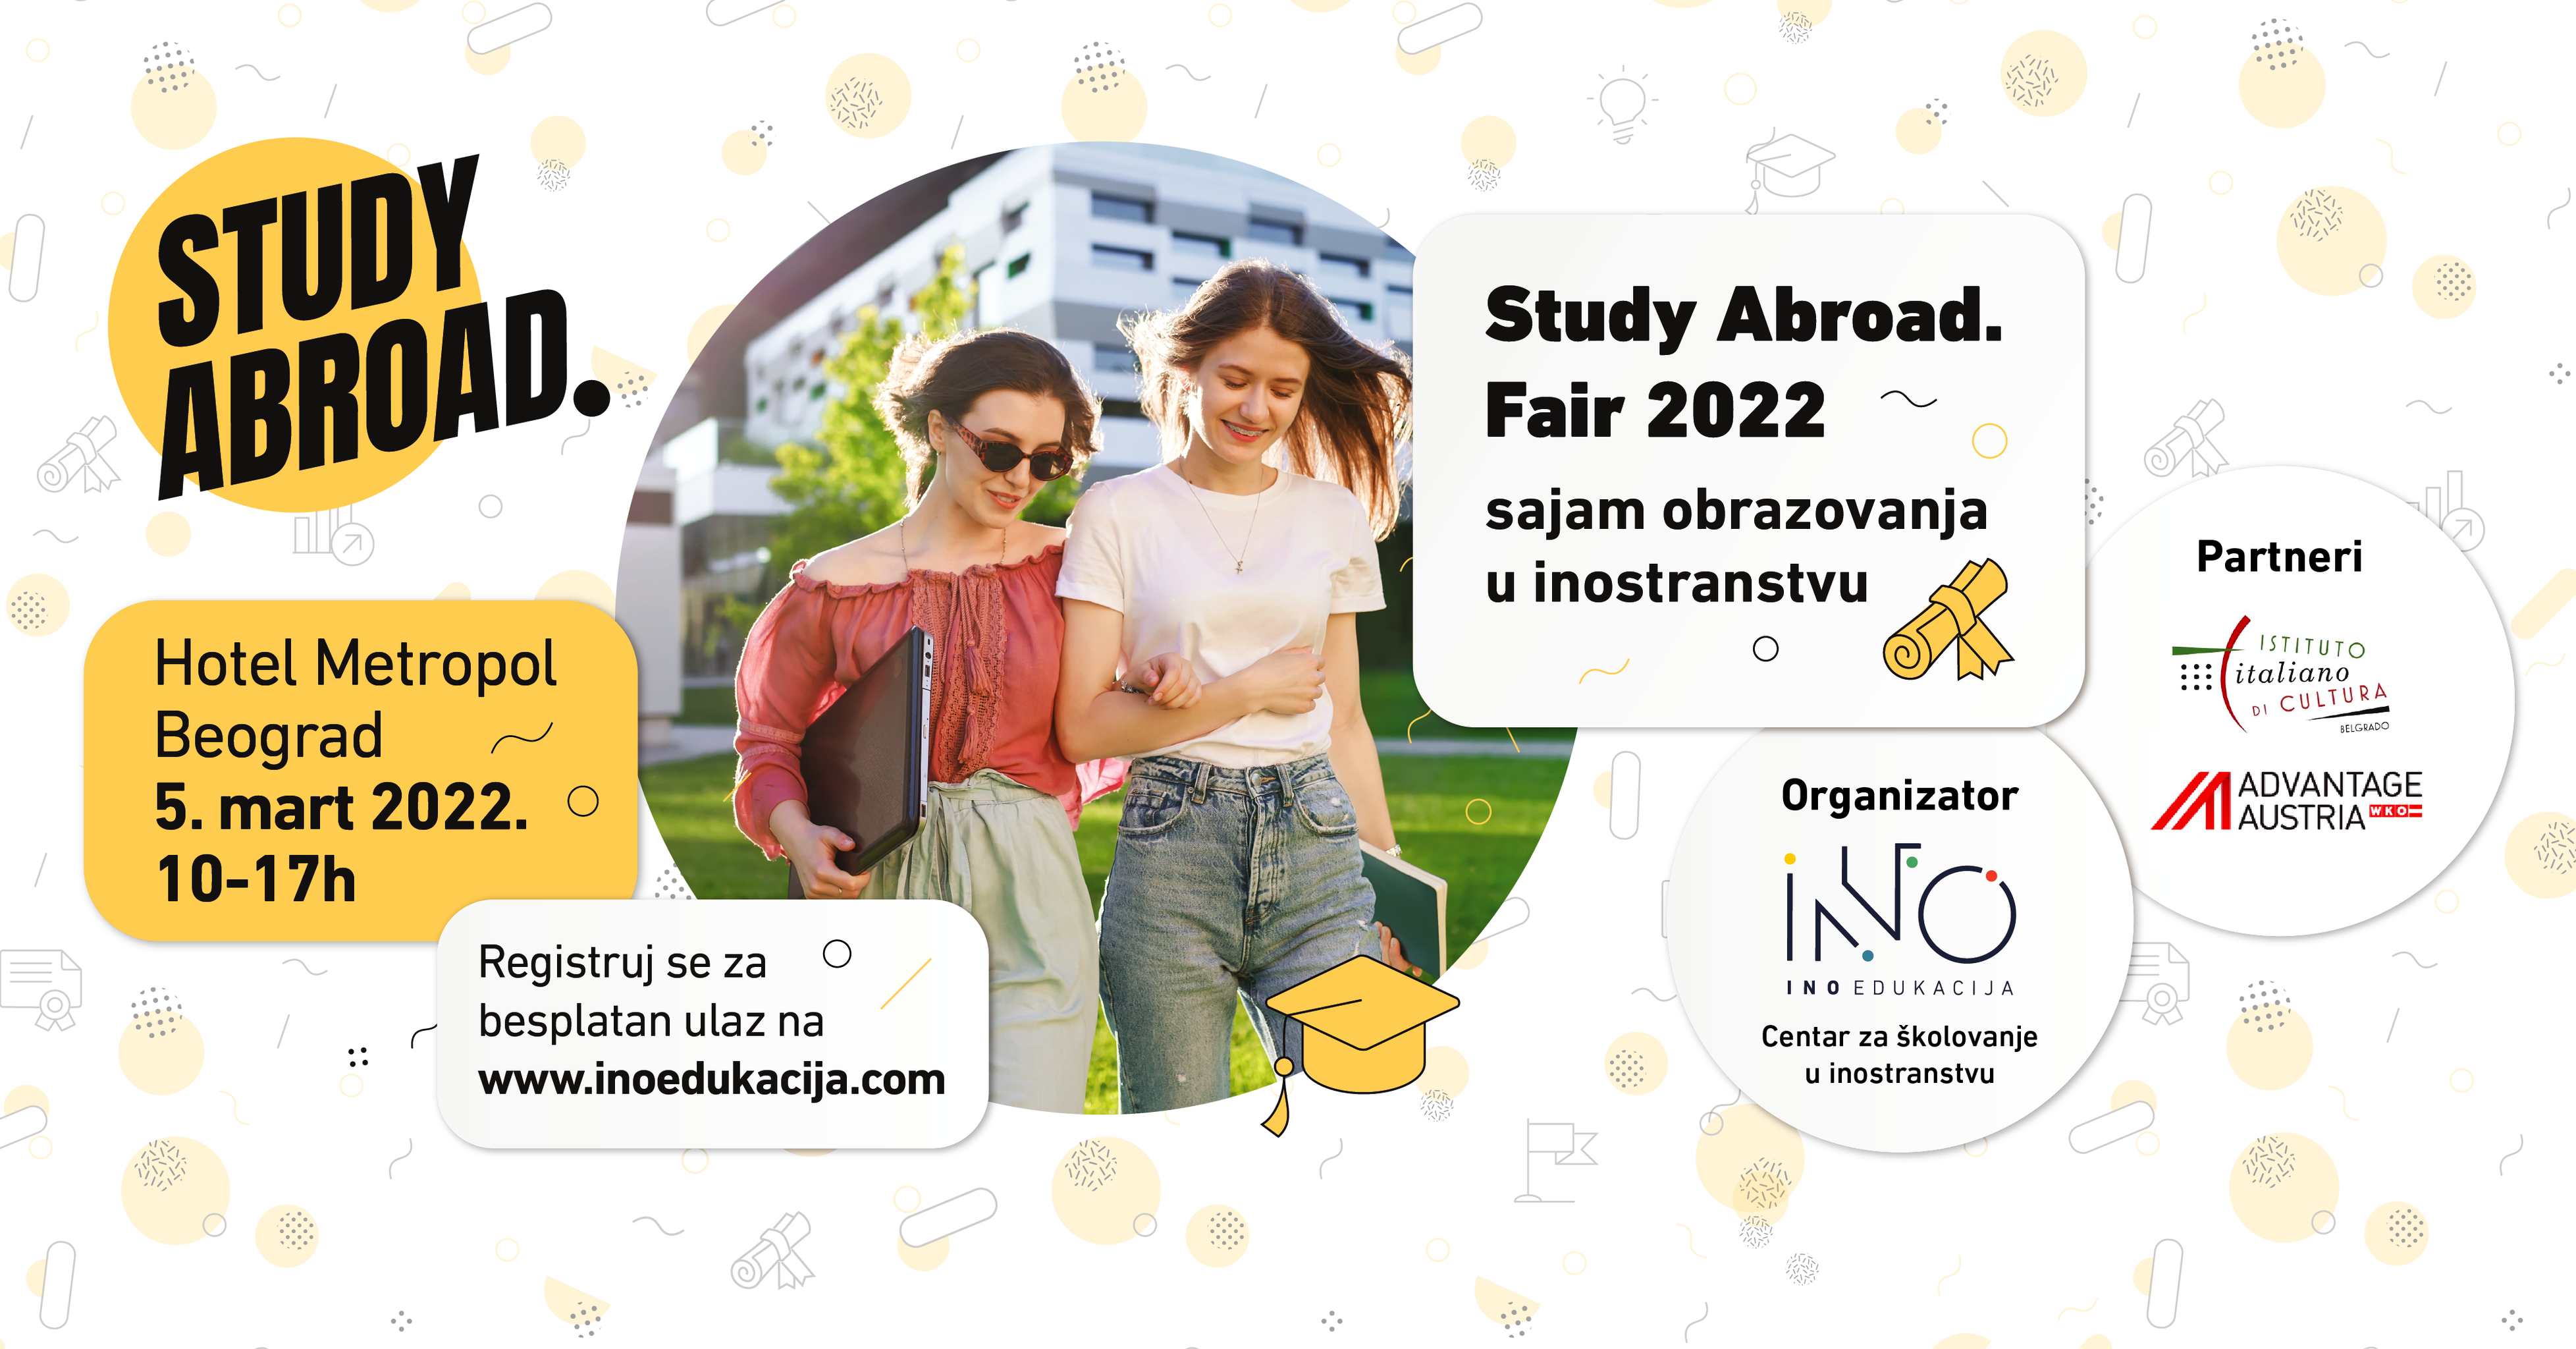 Study Abroad. Fair - prolećni Sajam obrazovanja u inostranstvu